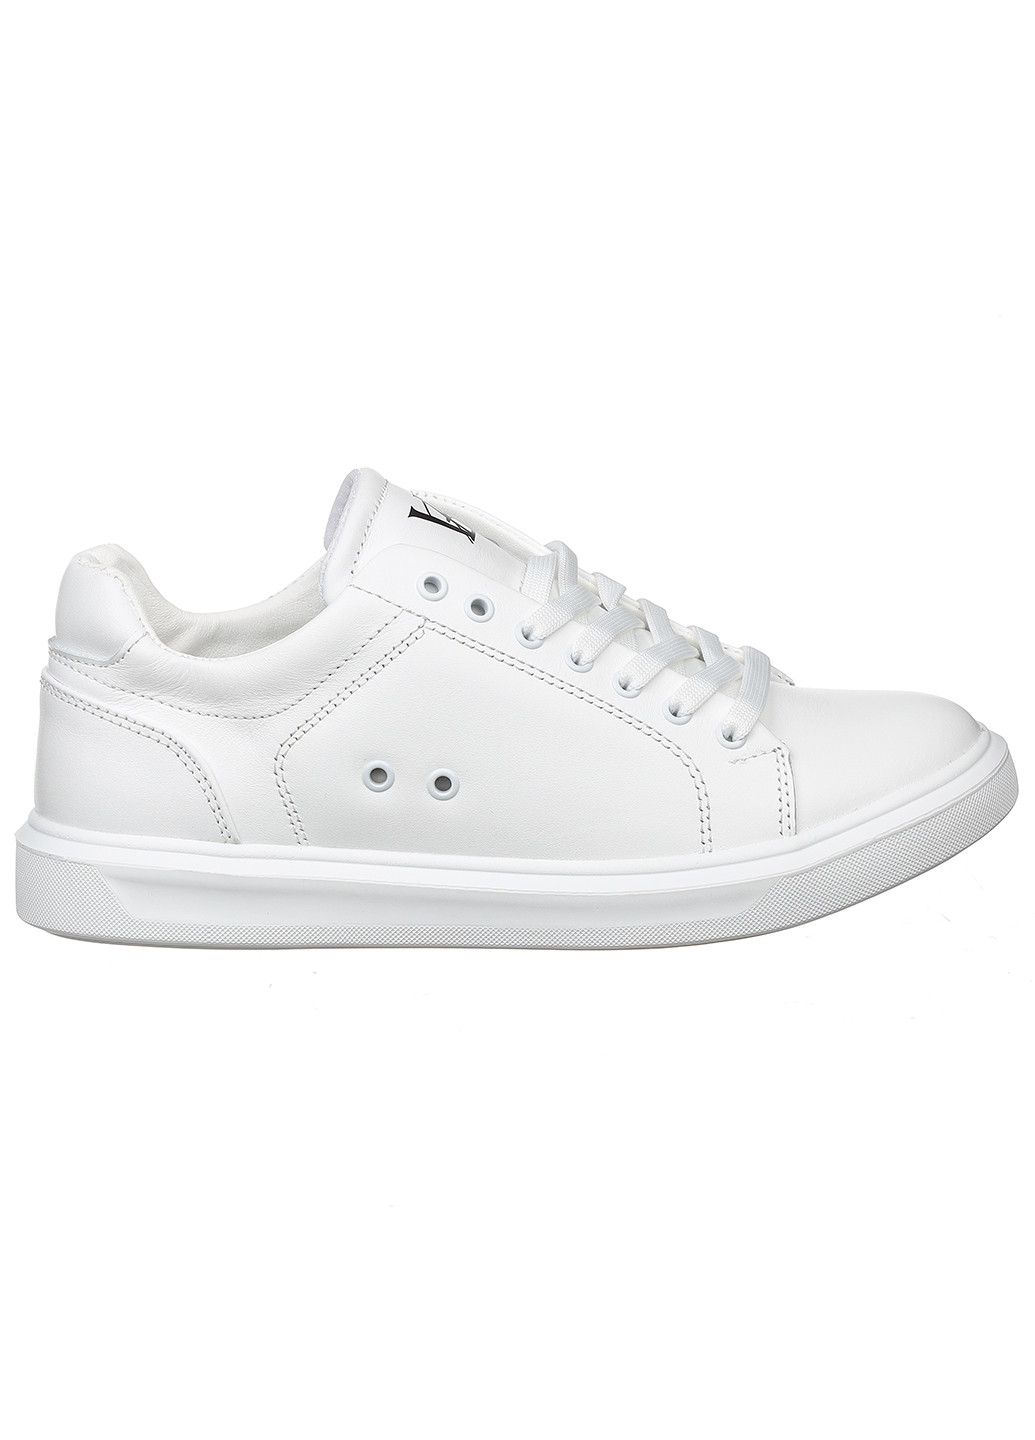 Білі осінні жіночі кросівки 10126-06 Best Vak